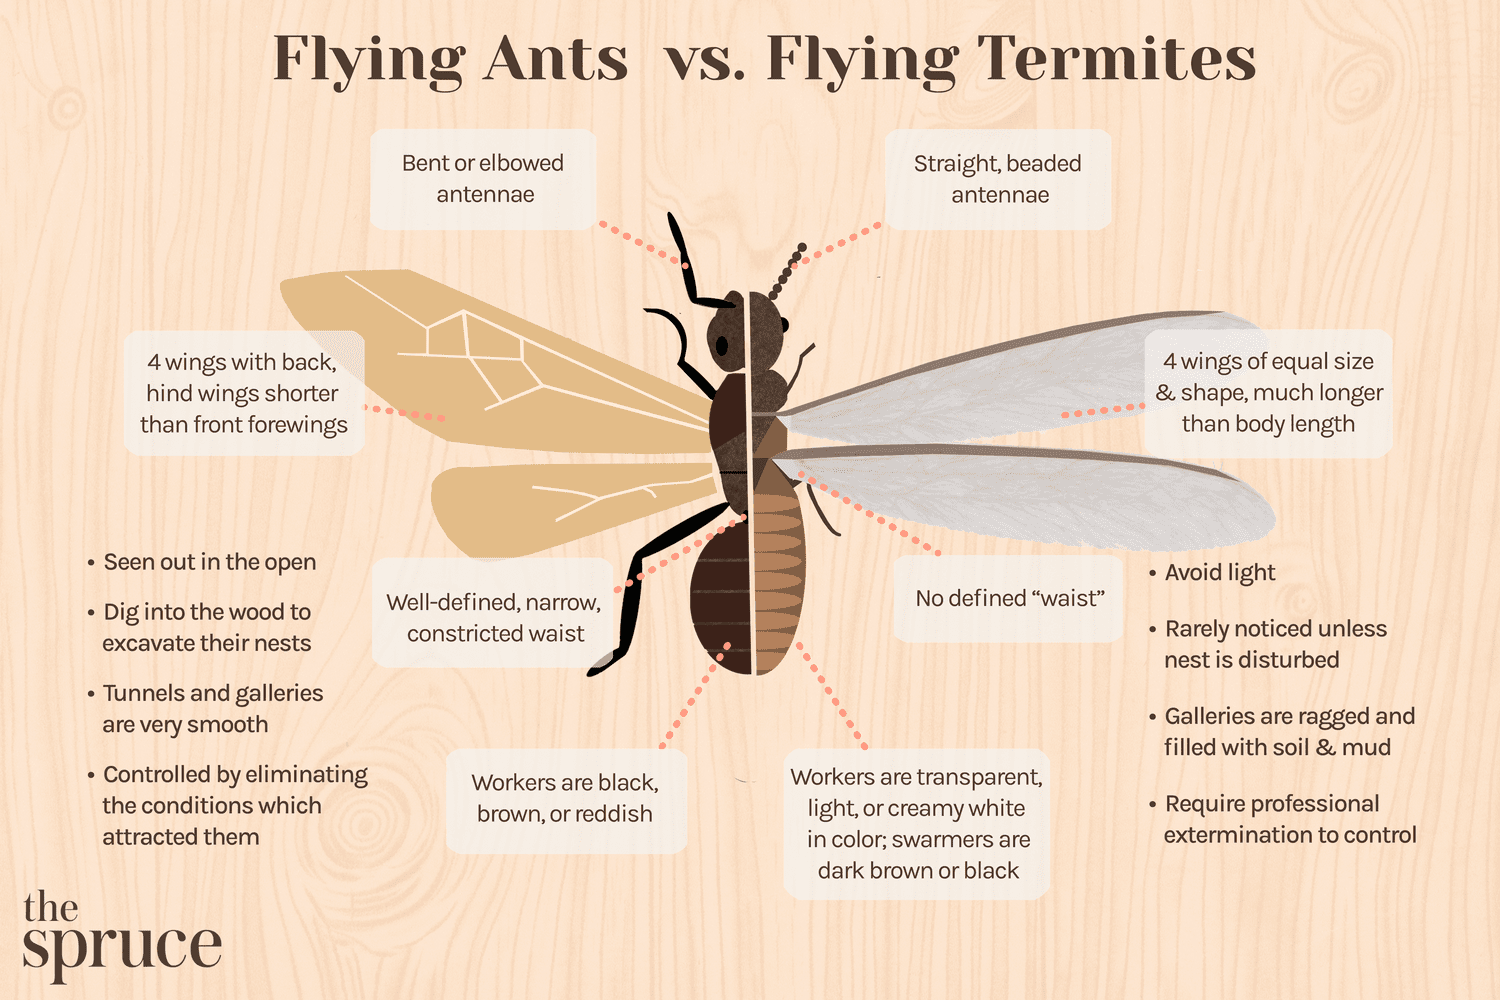 Termites et fourmis : Comment faire la différence